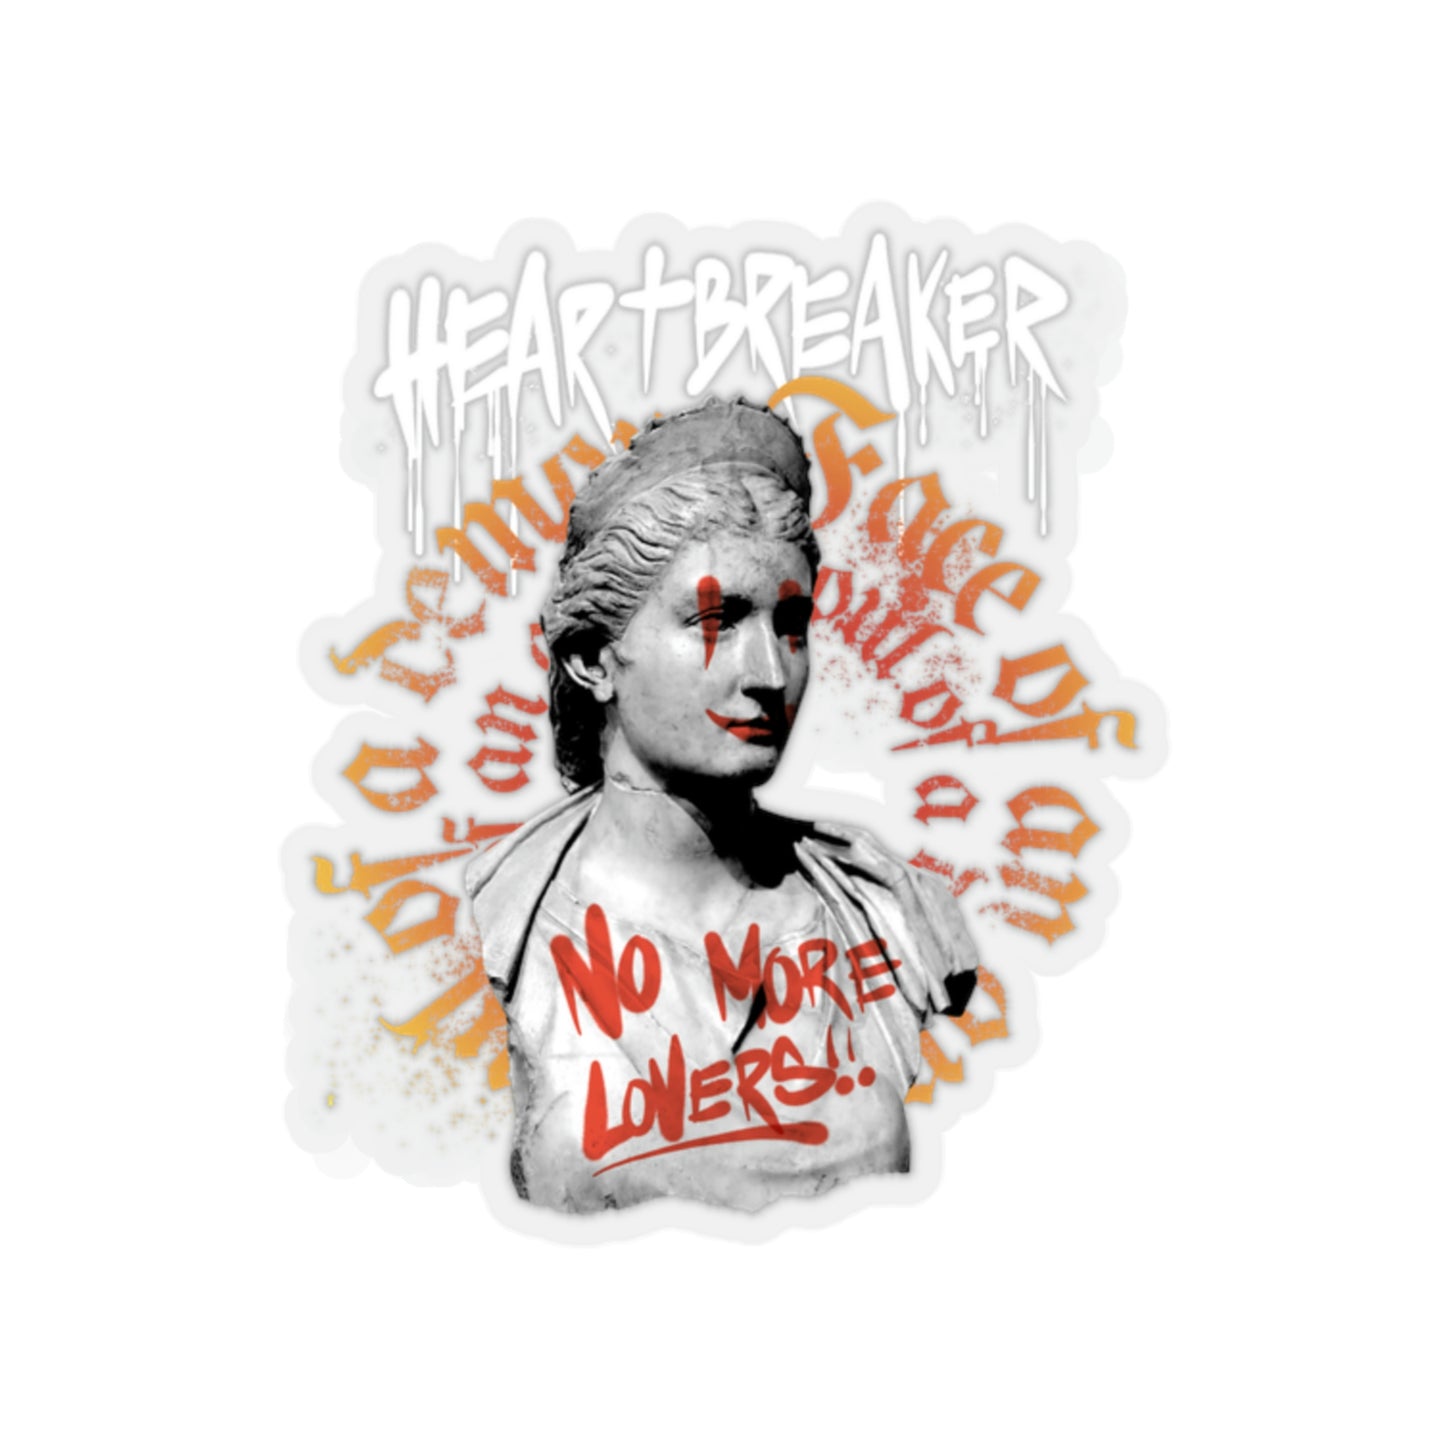 Heartbreaker Greek Statue Graffiti, Y2k Aesthetic Sticker